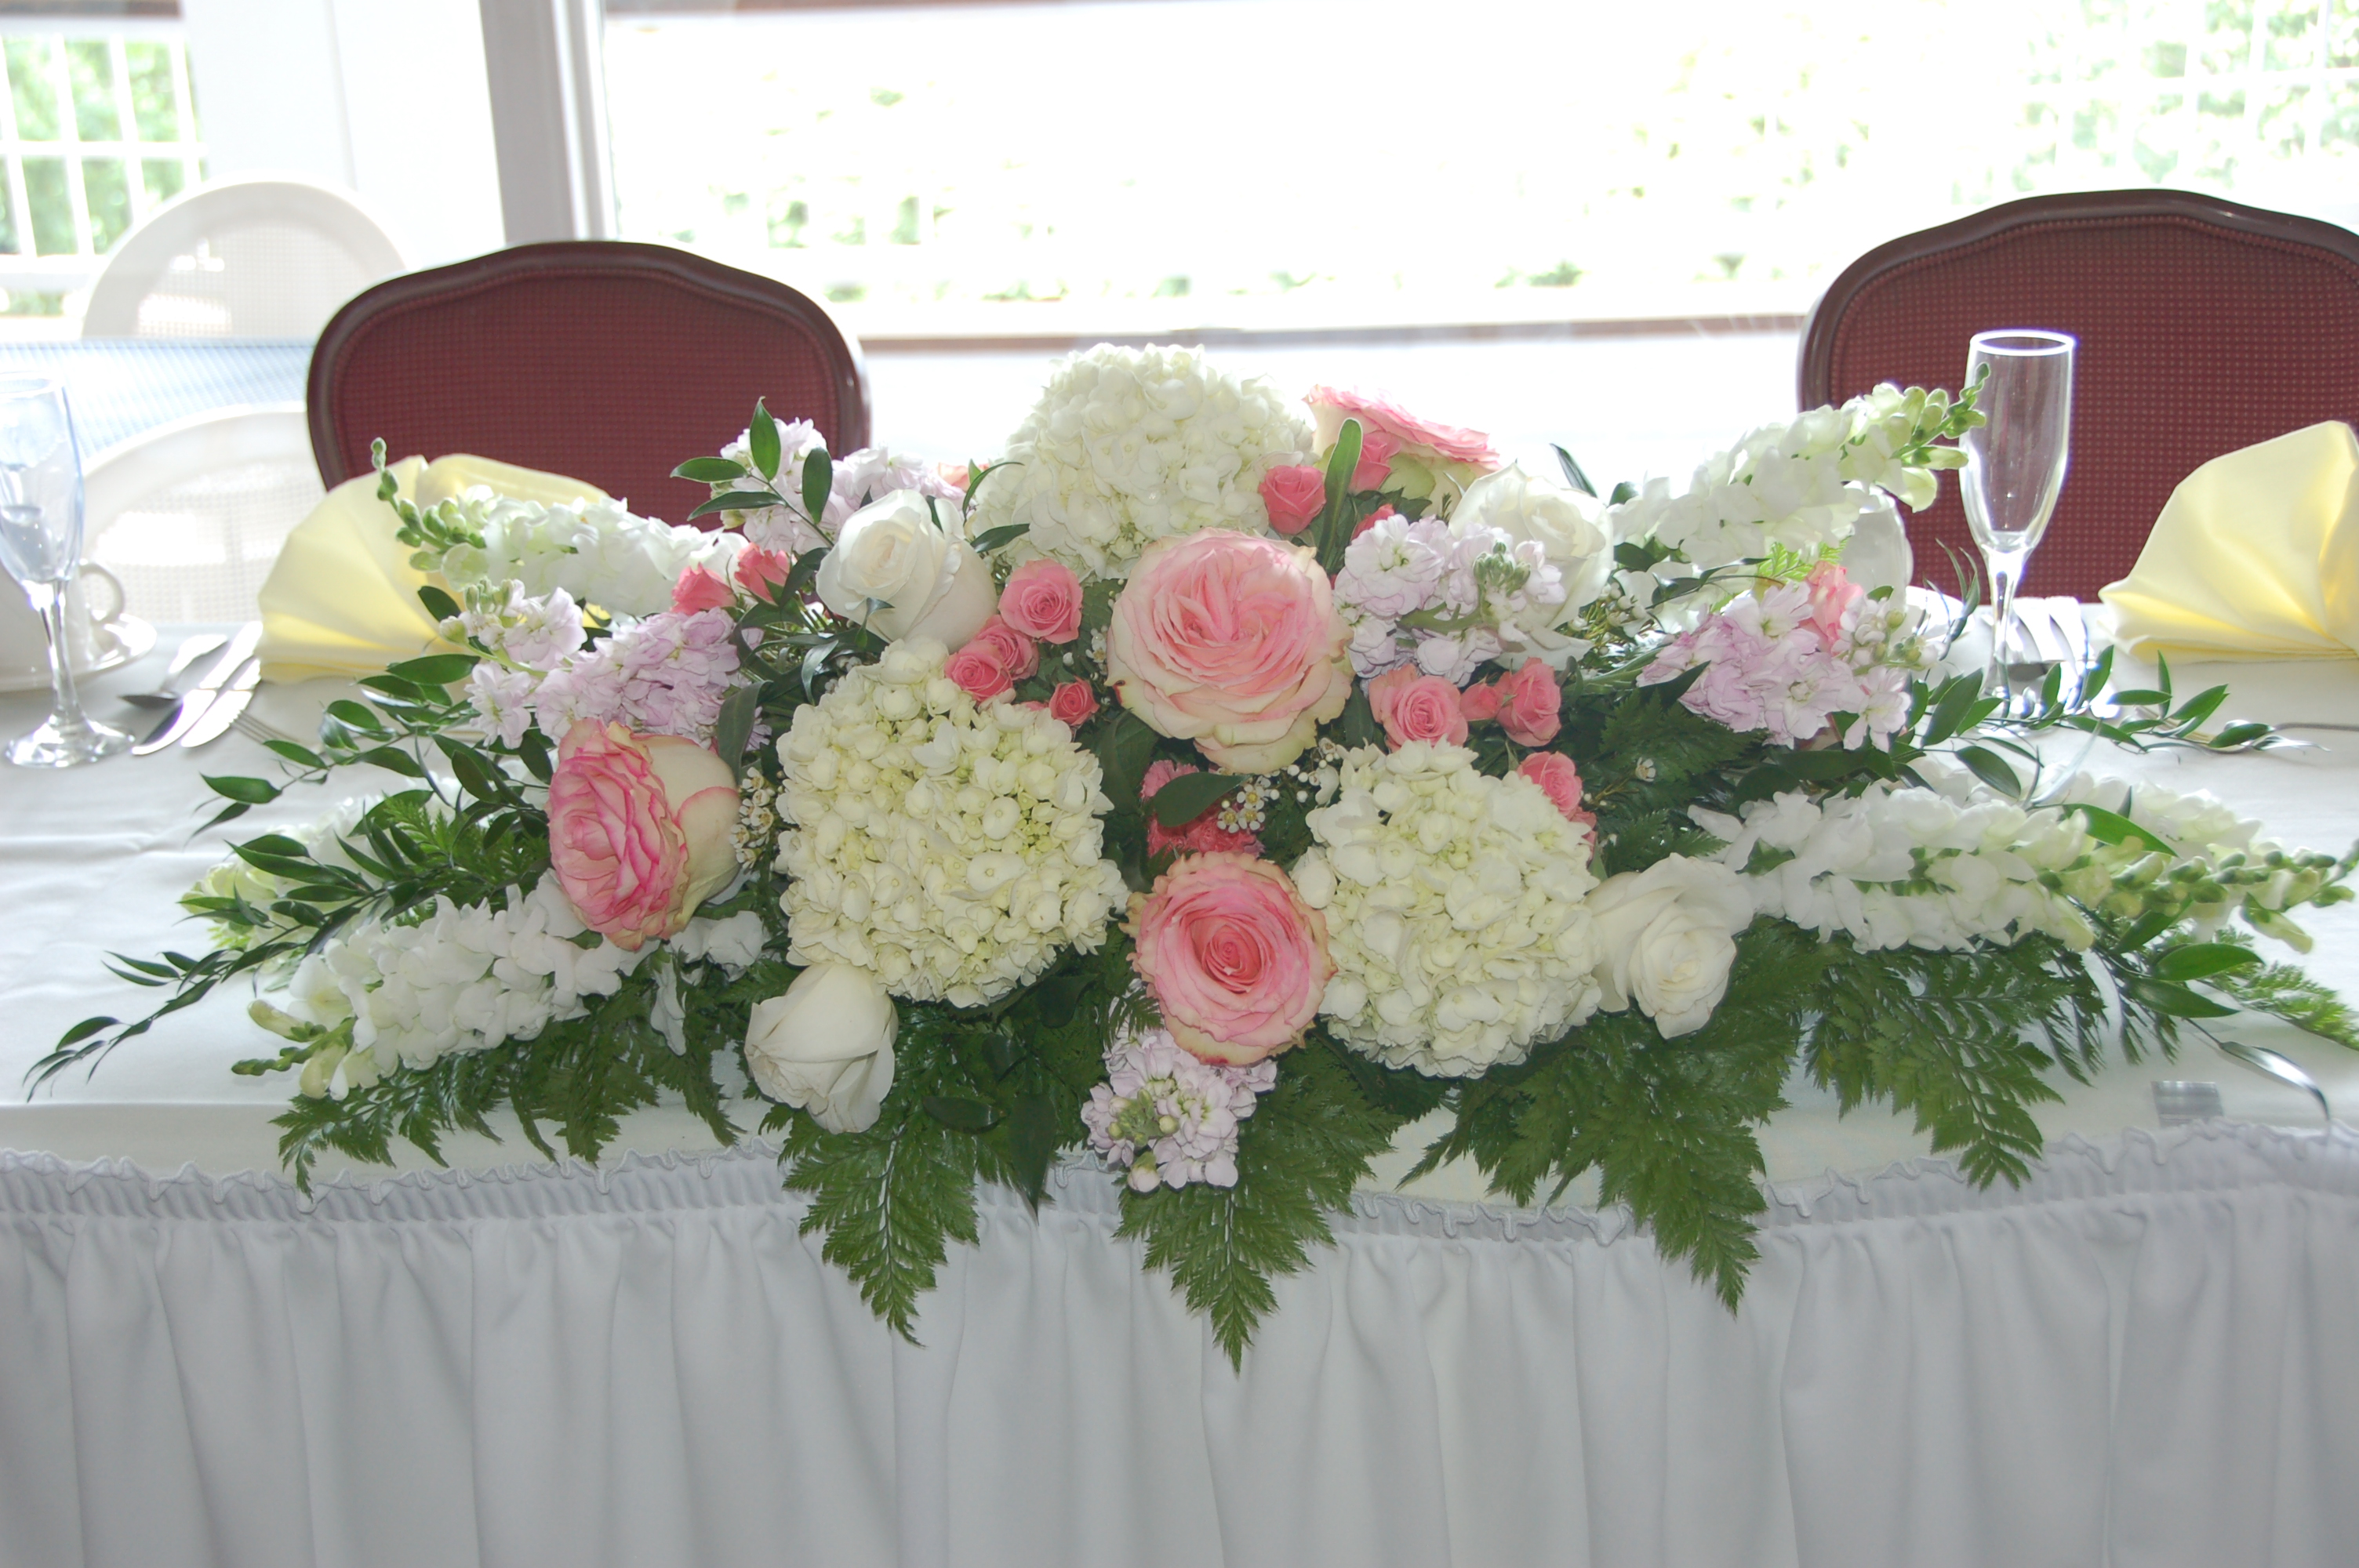 Wedding Head Table Flower Arrangements | Tedxgastownwomen.com